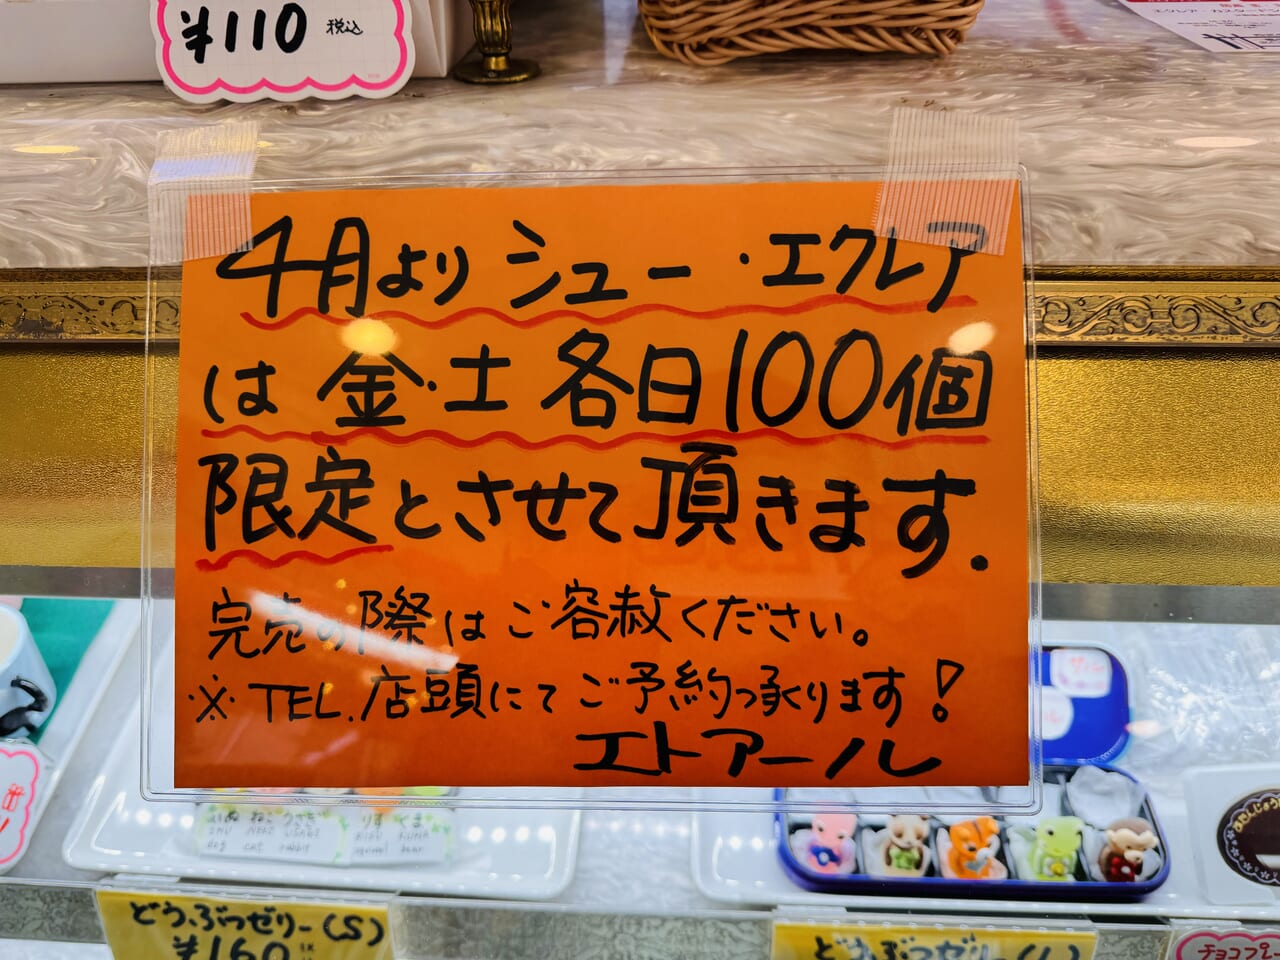 ¥100